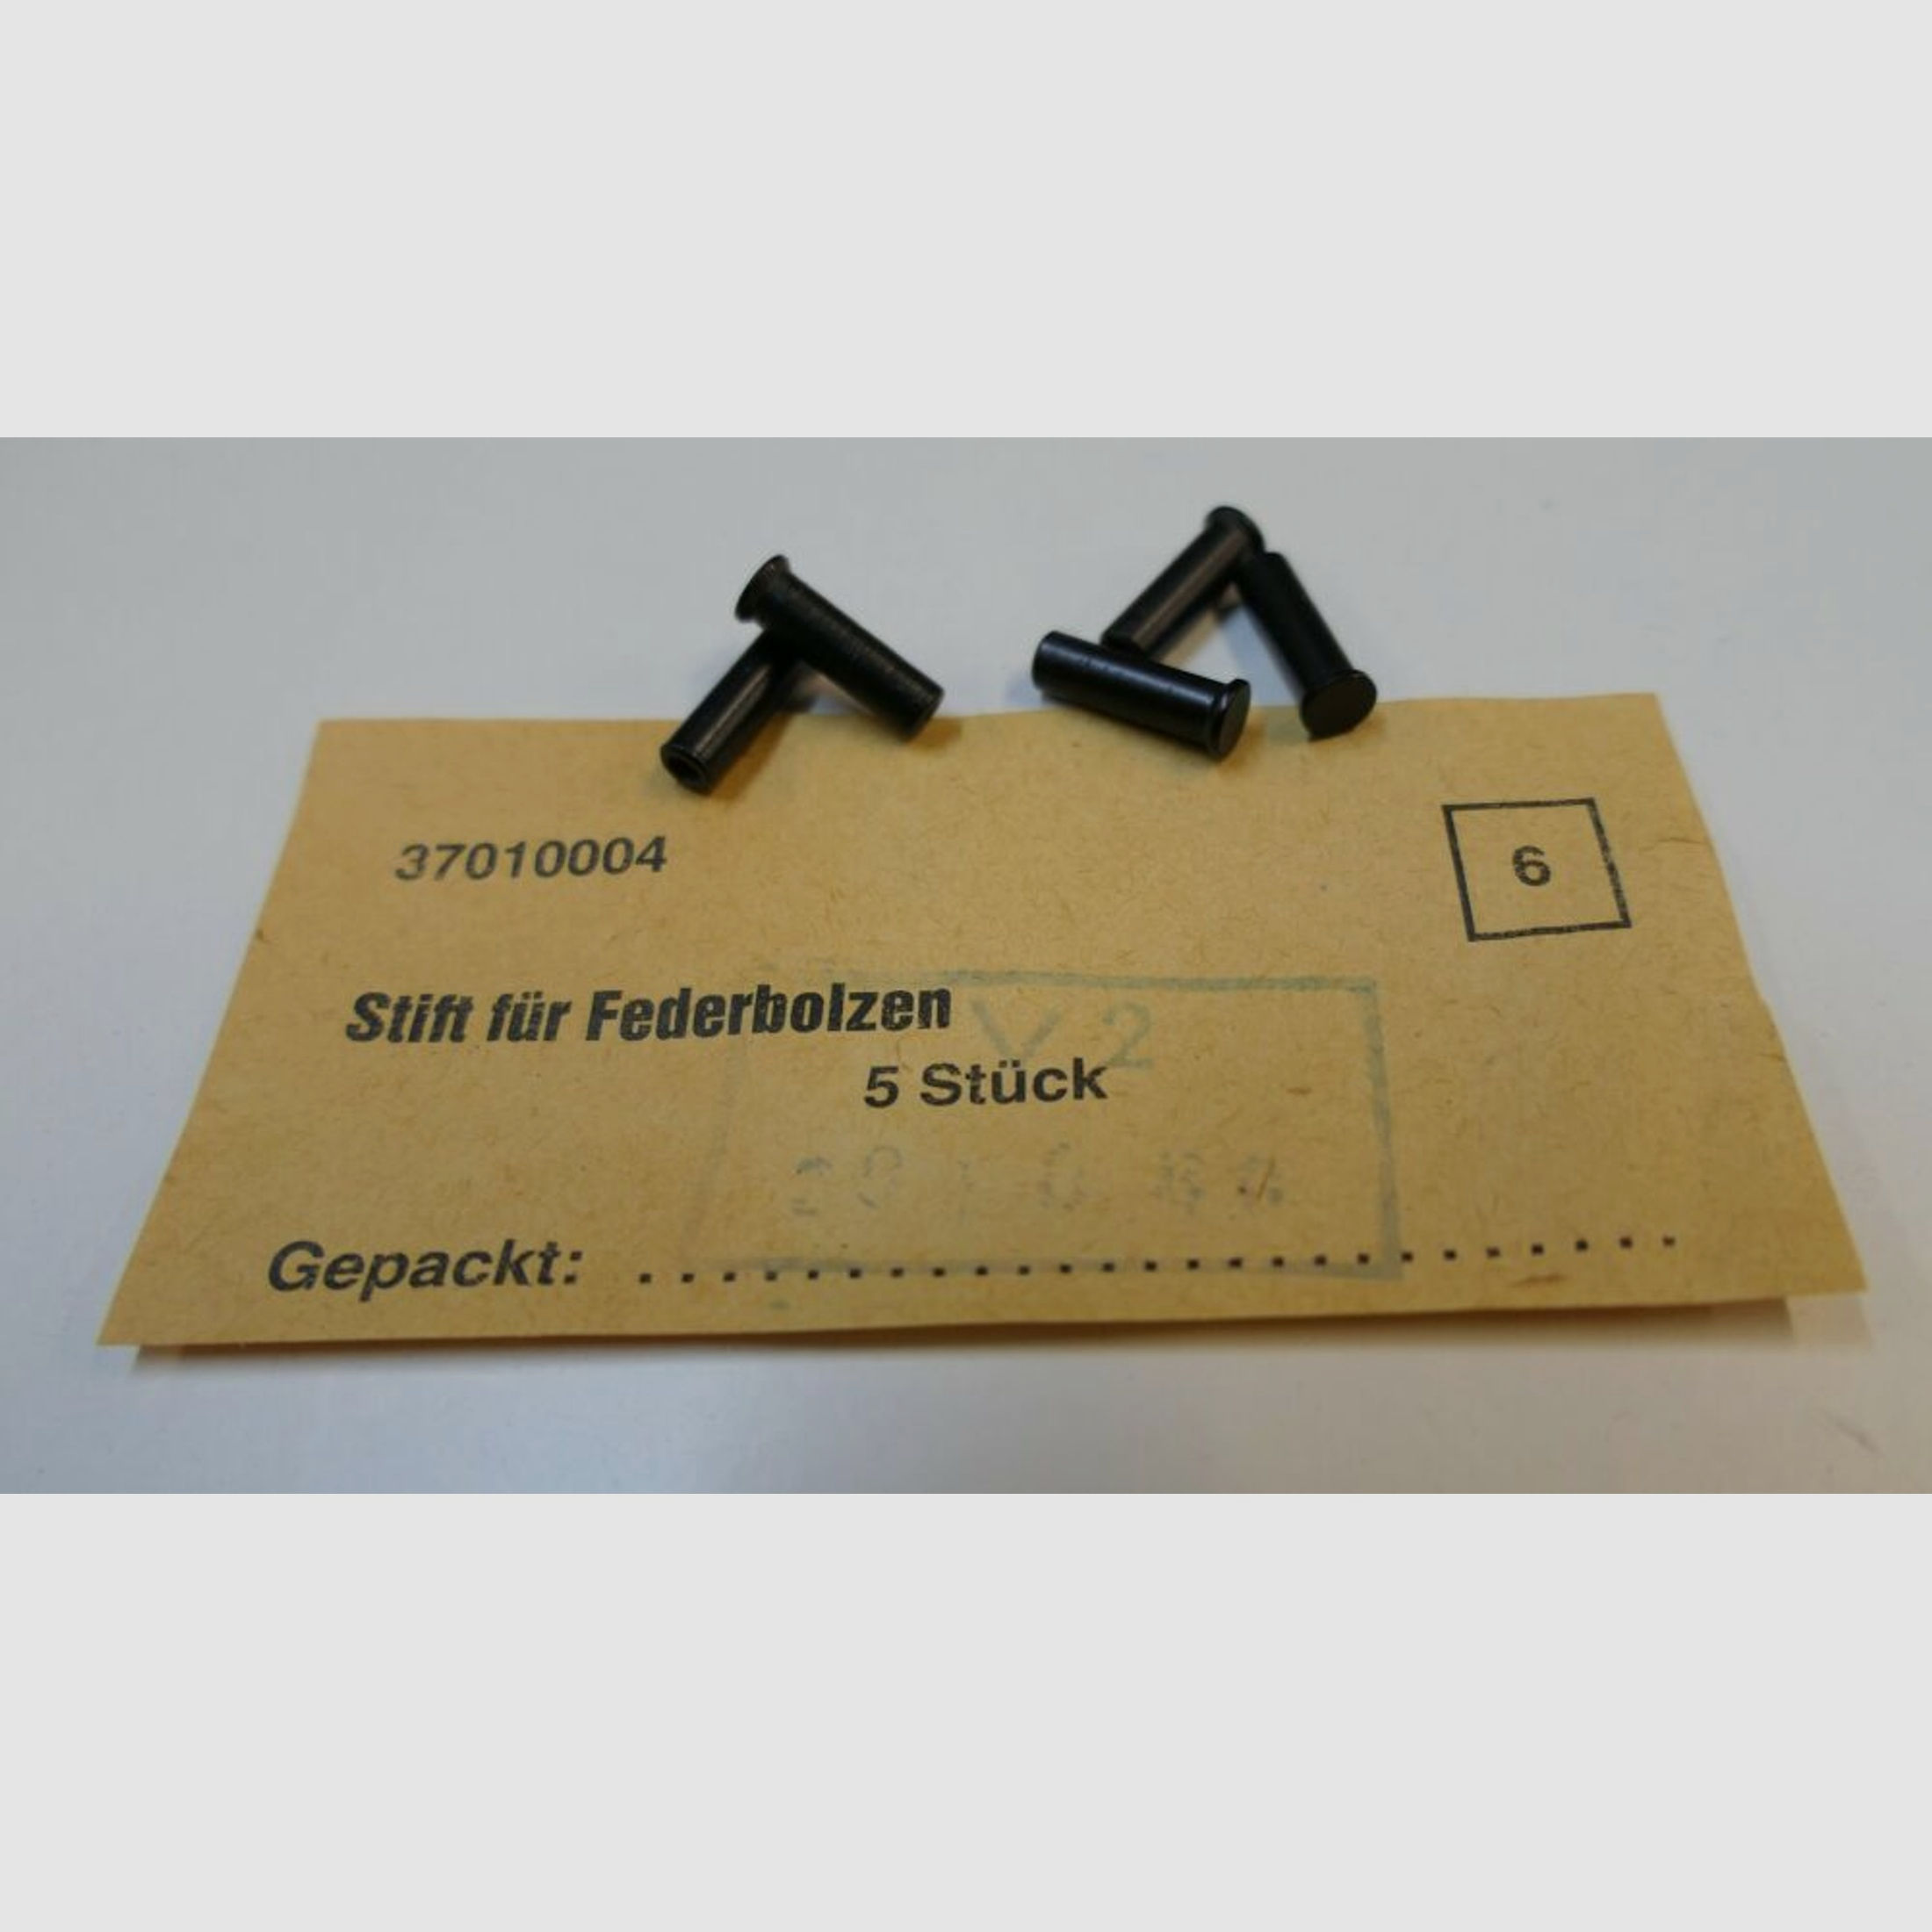 DDR VEB Geräte-& Werkzeugbau Wiesa	 orginal DDR NVA AK 47 Stift für Federbolzen [ 6 ] unbenutzt, neu für AK47, 7,62x39